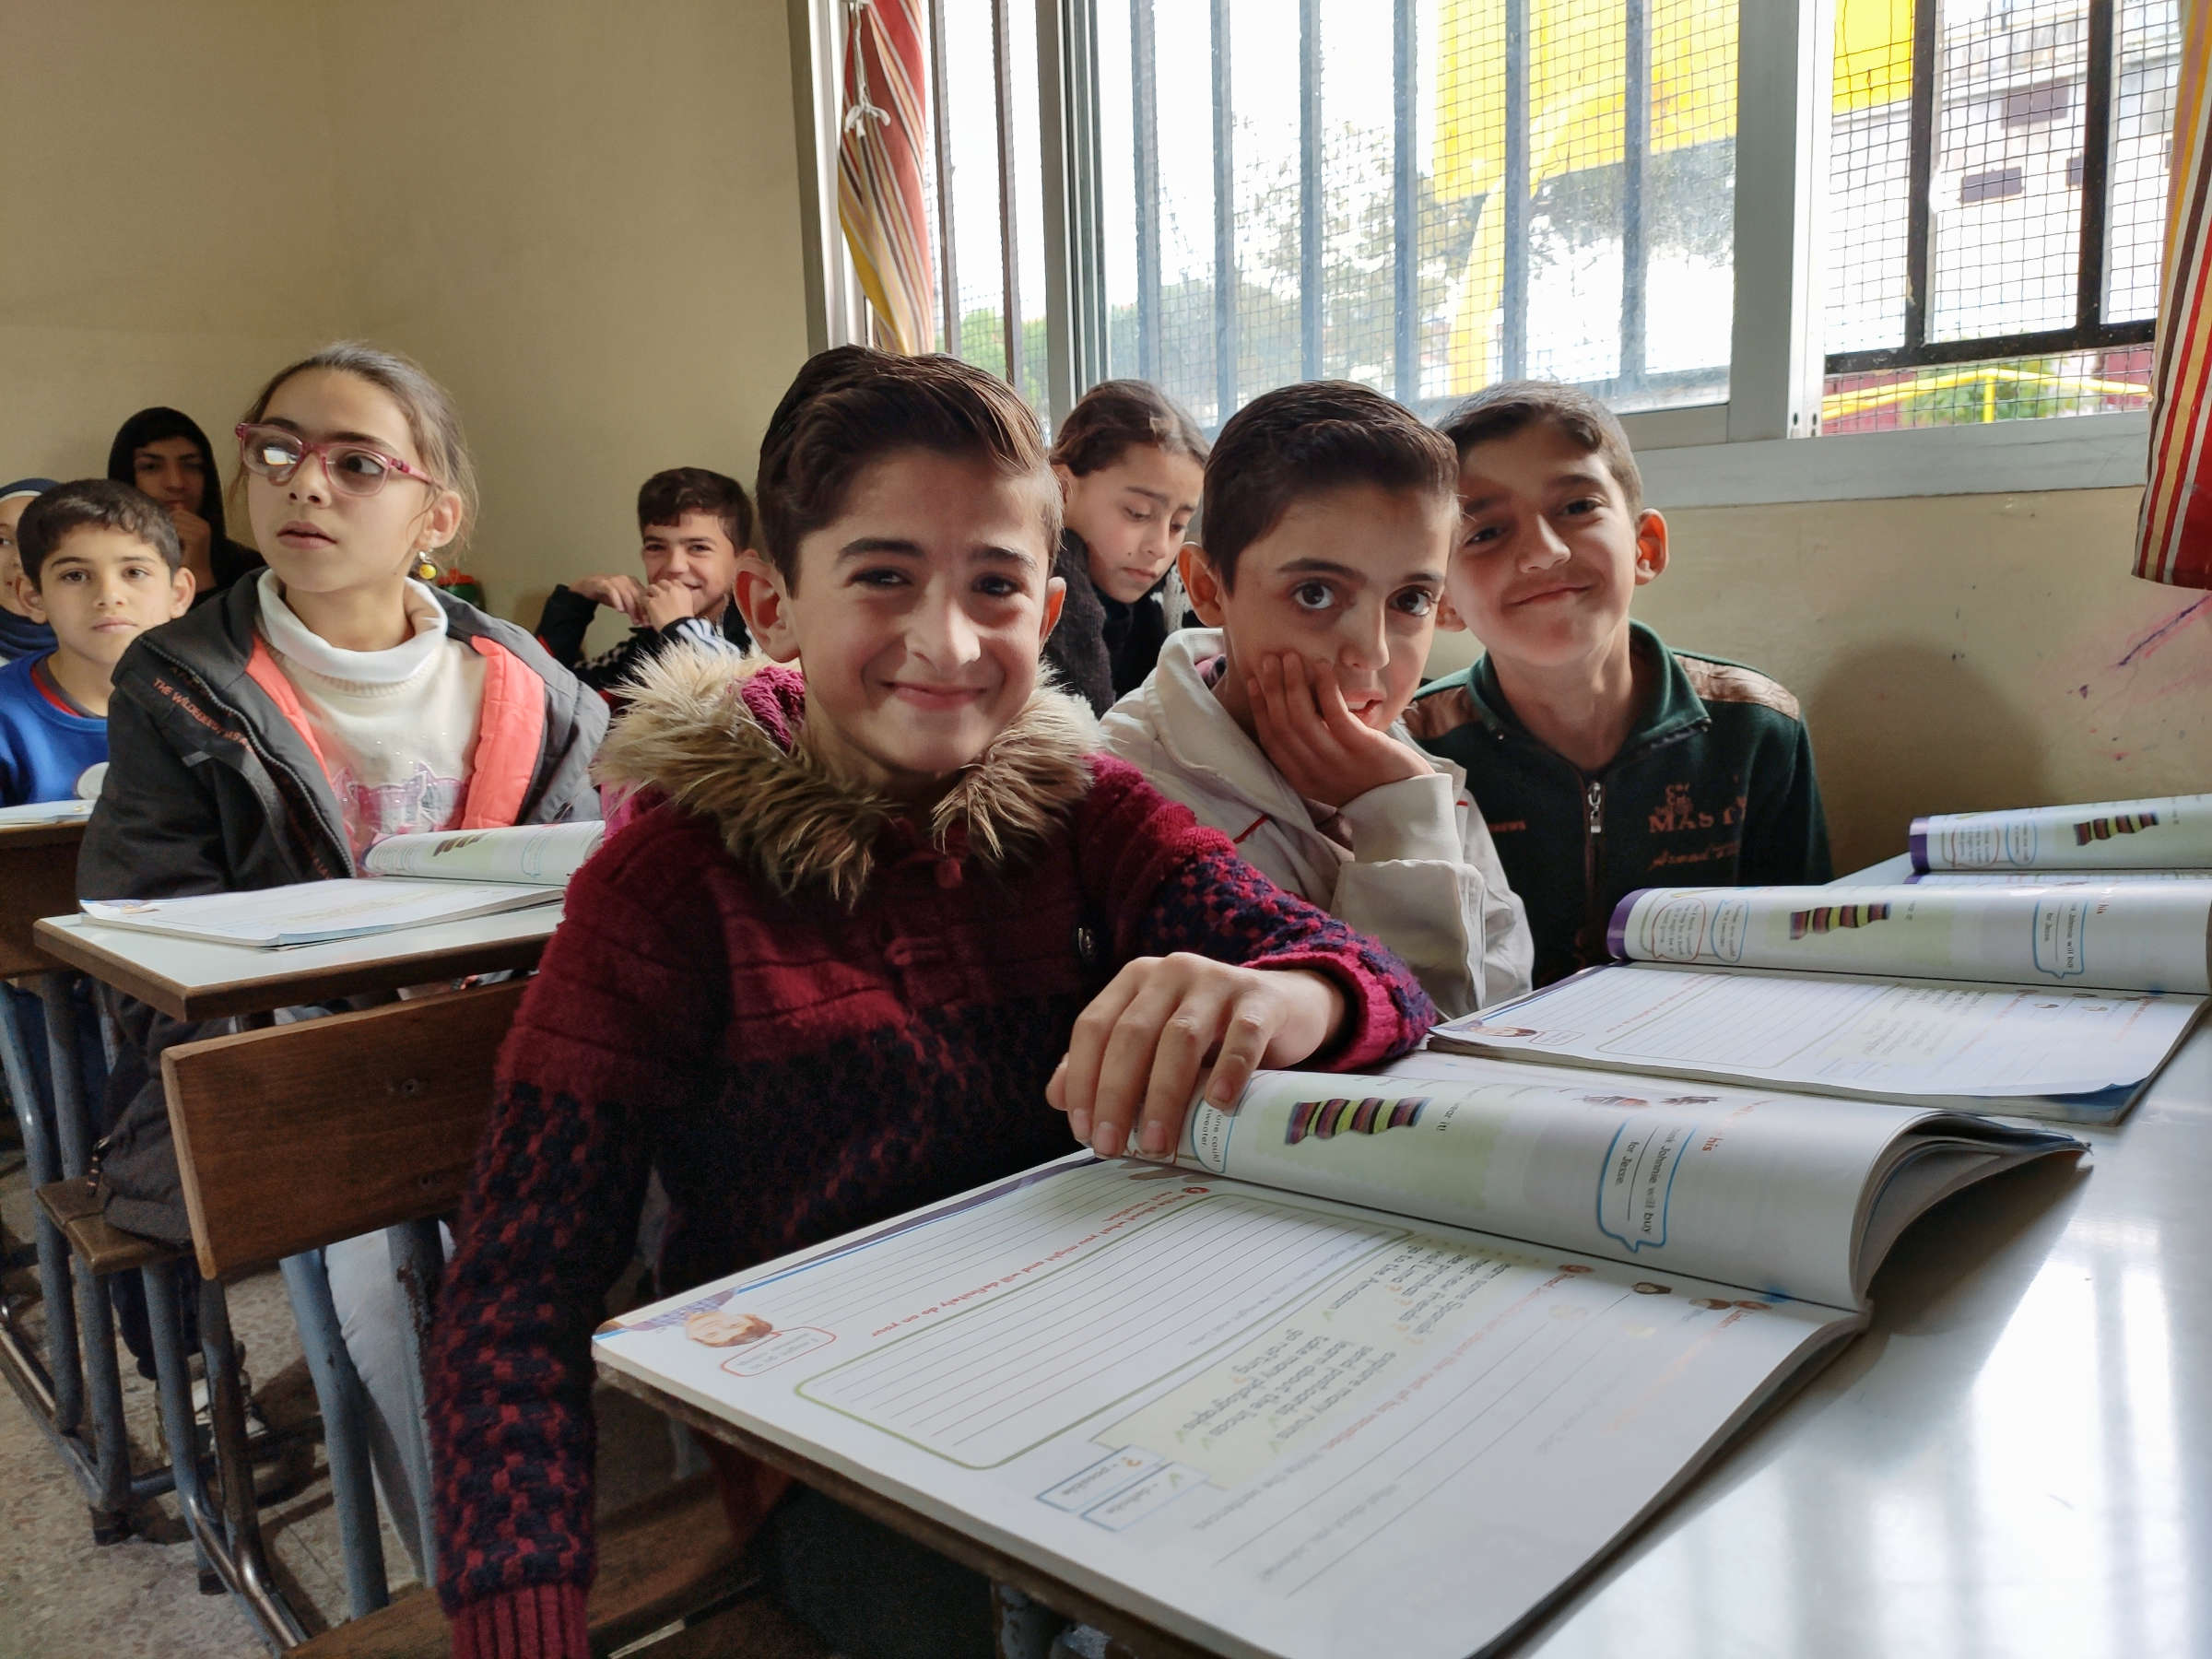 Schülerinnen und Schüler in Klassenraum. Drei Kinder im Vordergrund blicken lächelnd in die Kamera